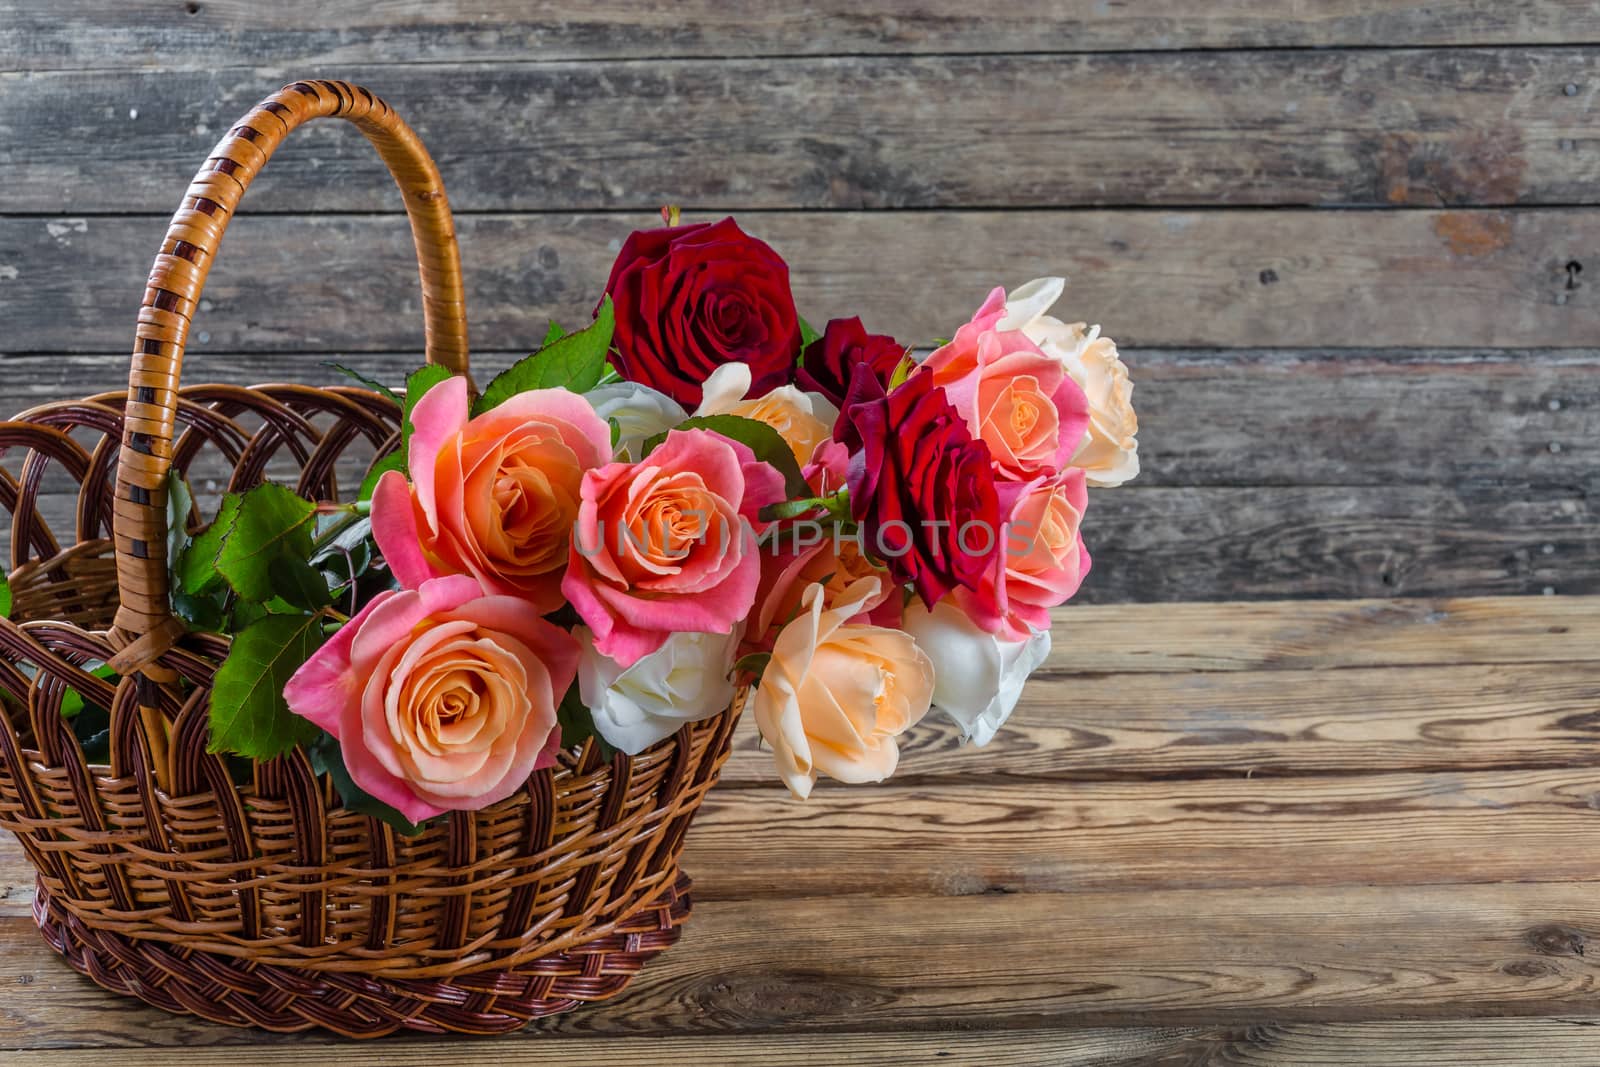 Roses in basket by firewings